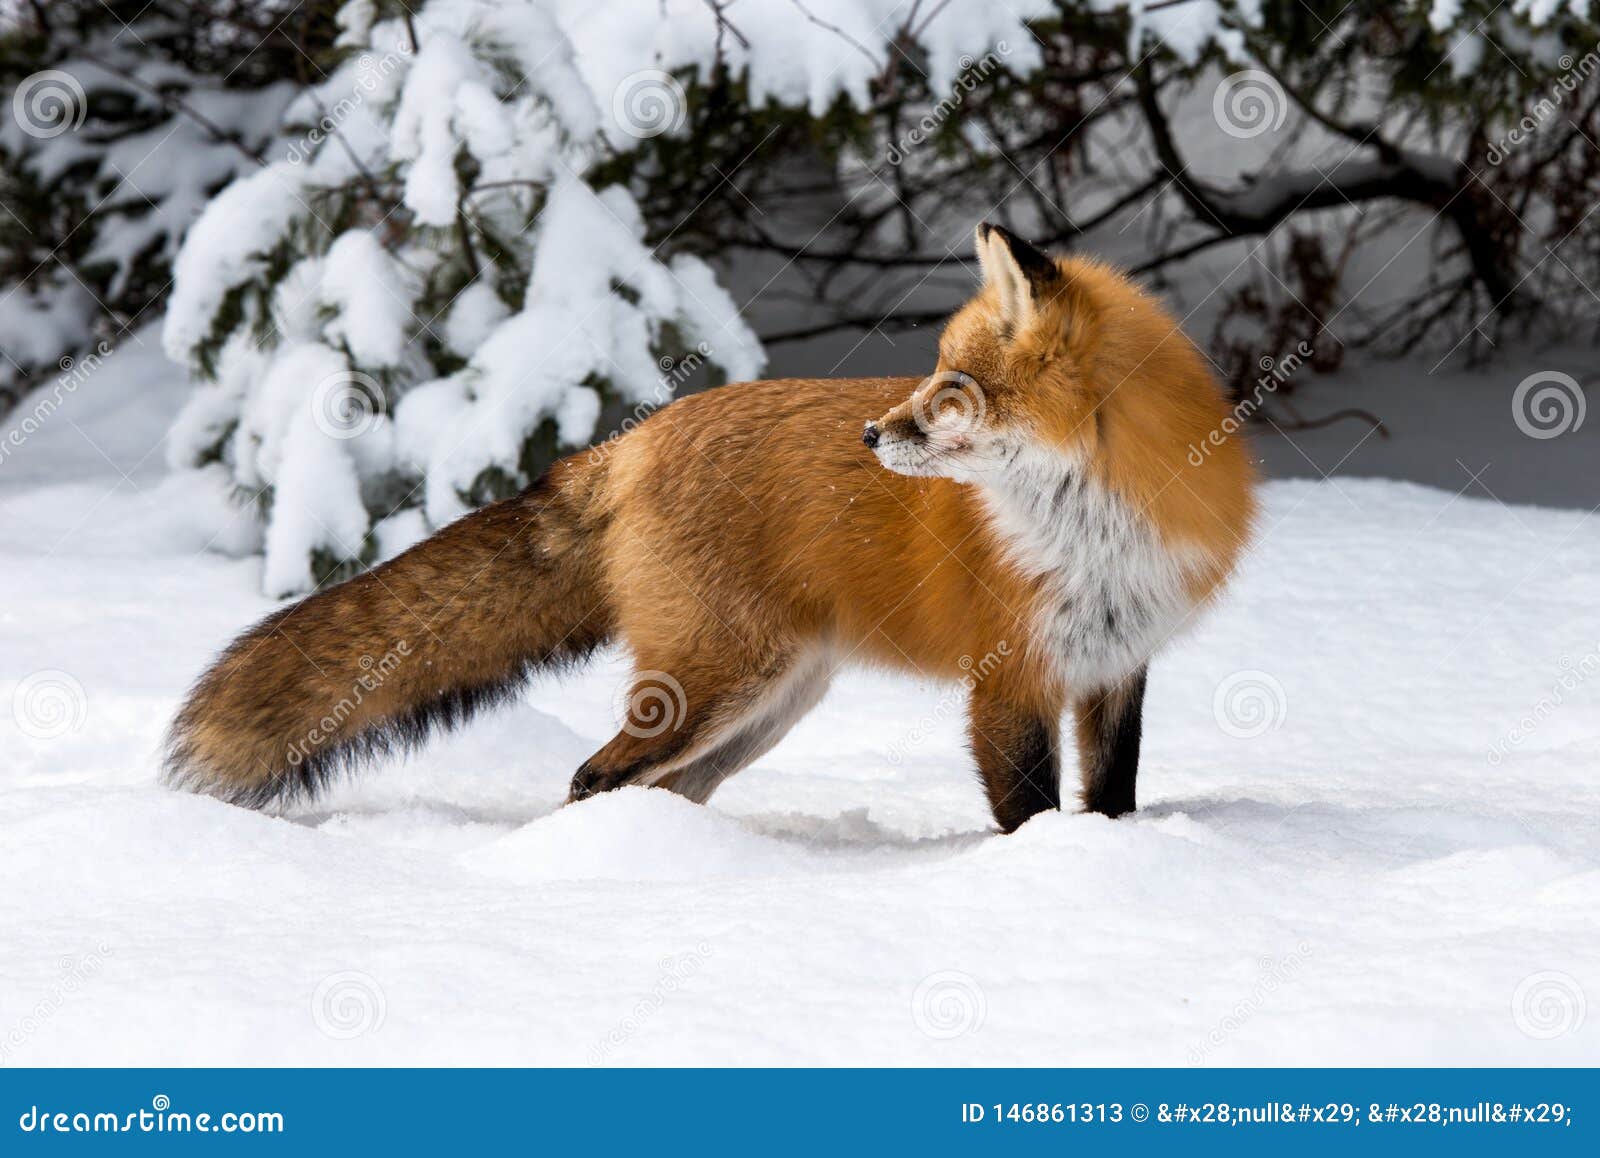 red fox vulpes vulpes in deep snow